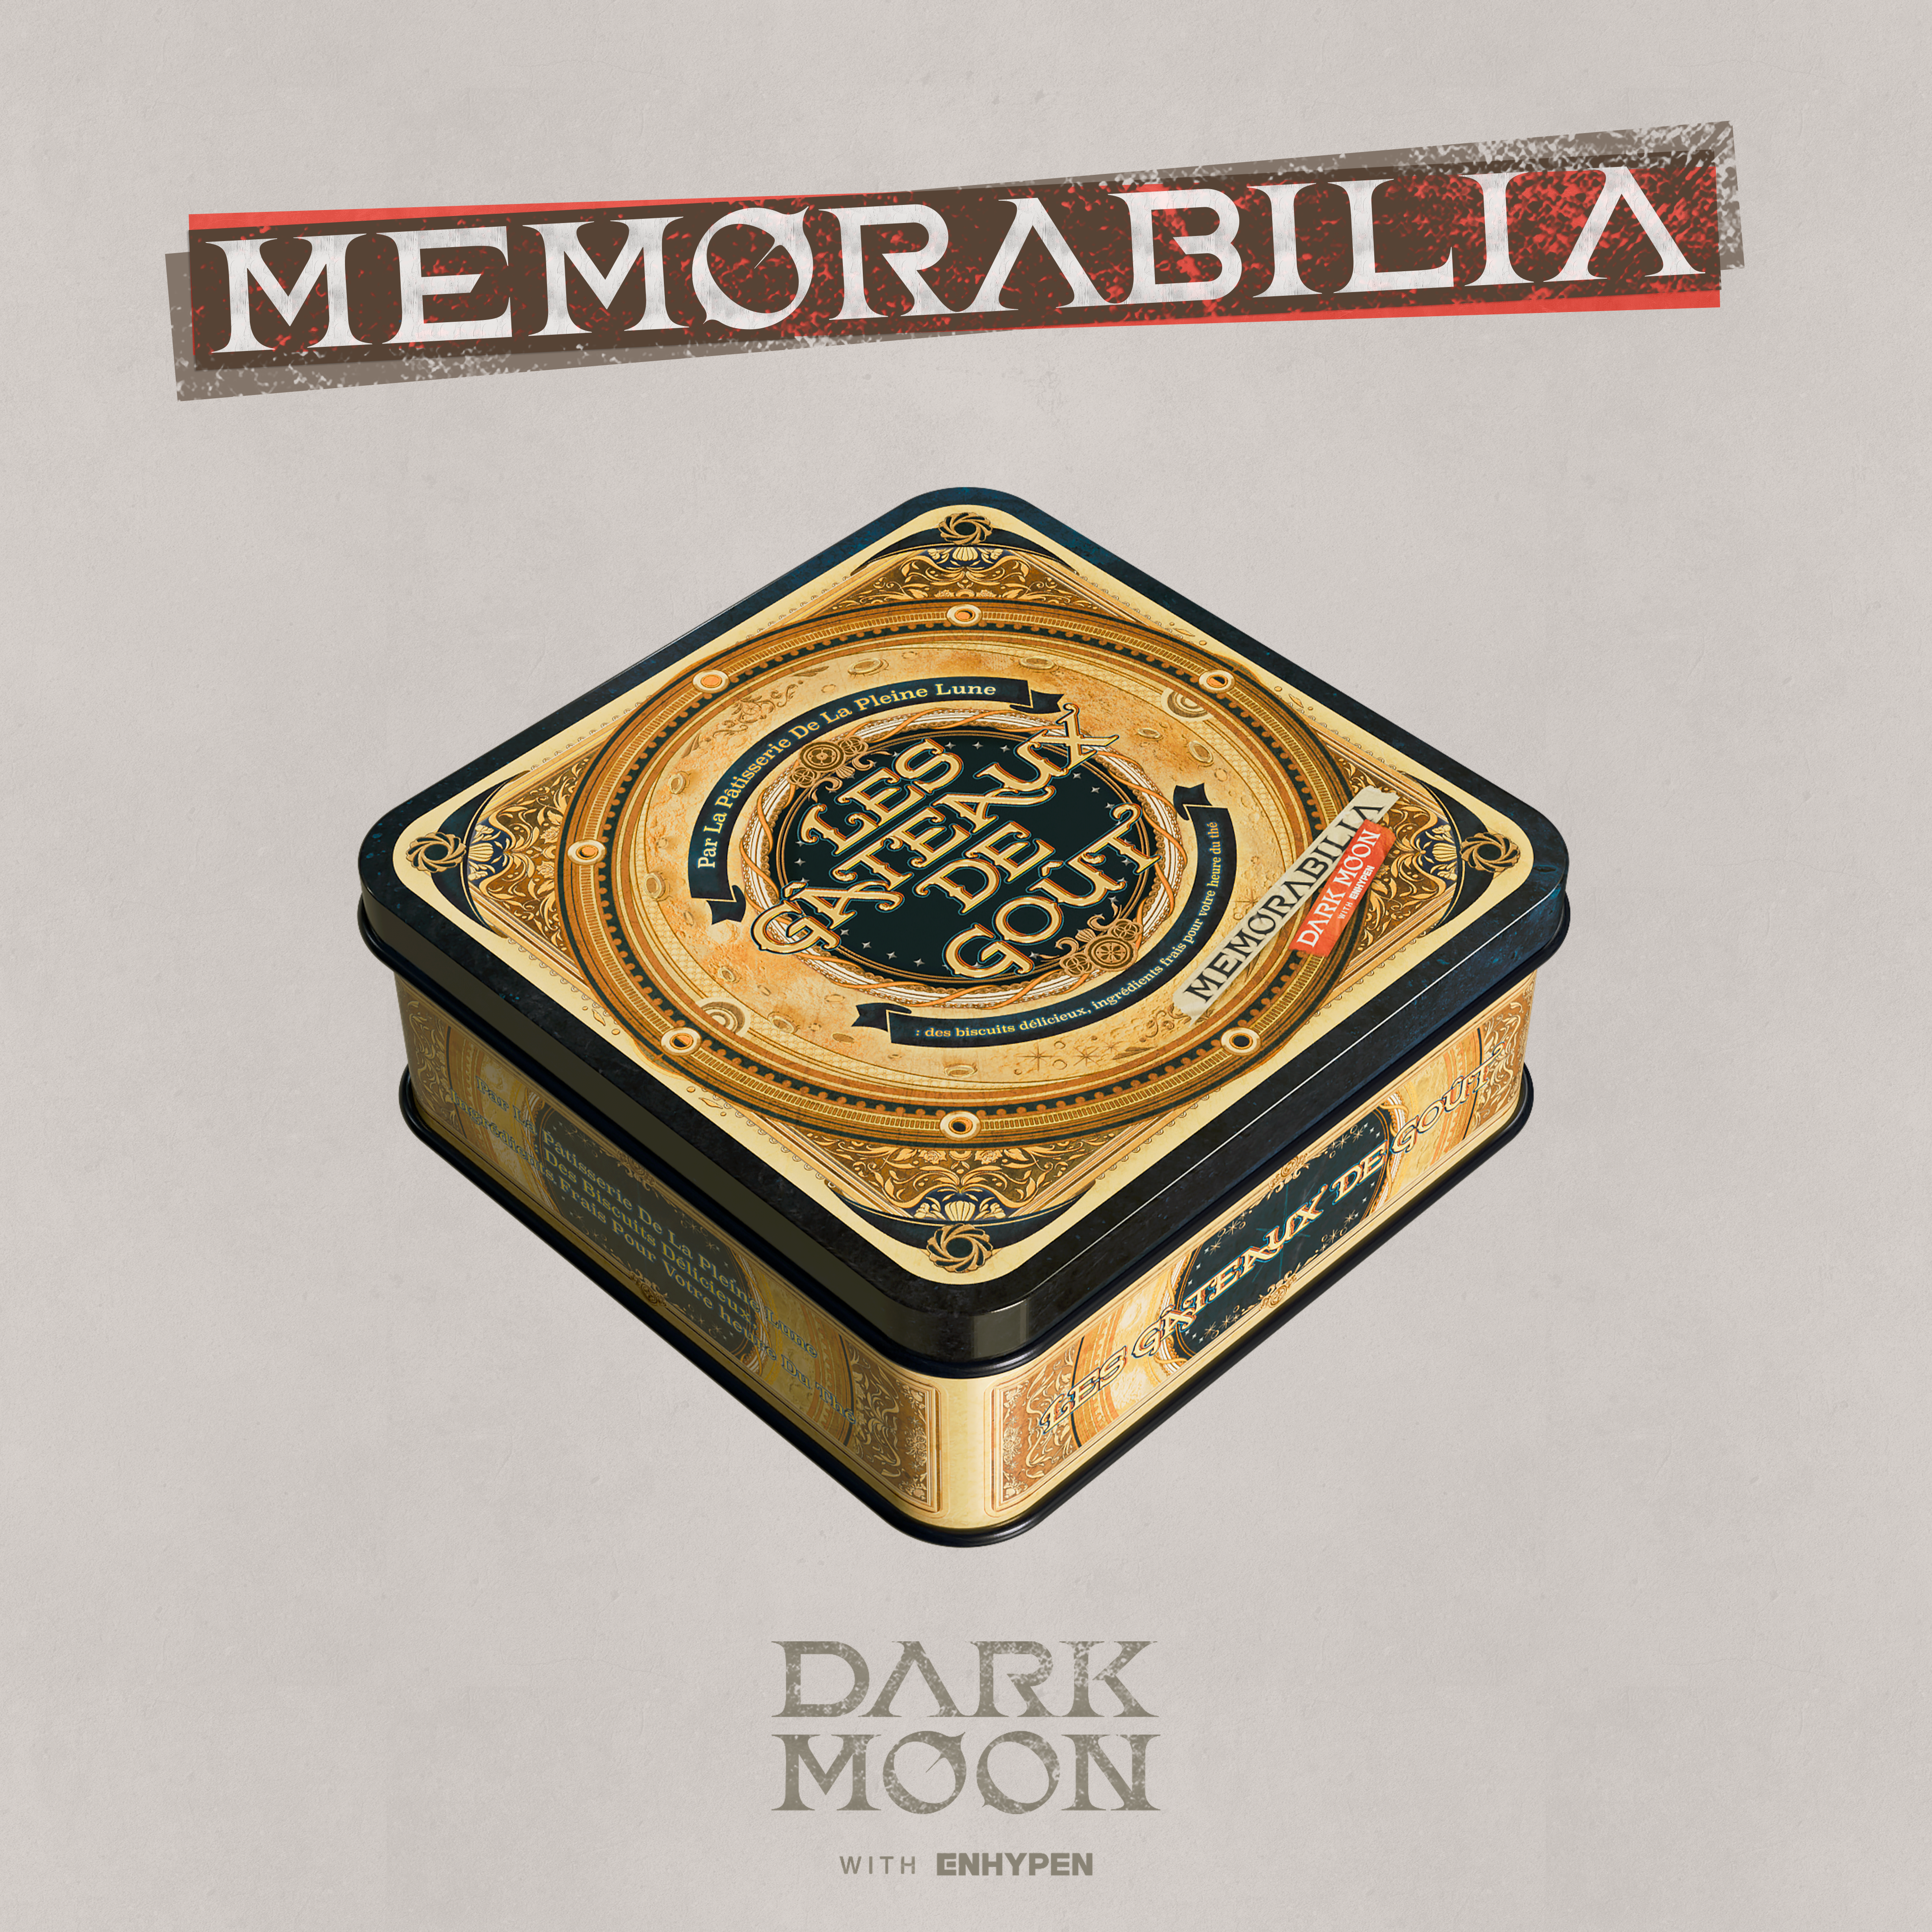 엔하이픈 ENHYPEN - DARK MOON SPECIAL ALBUM MEMORABILIA (Moon ver.)